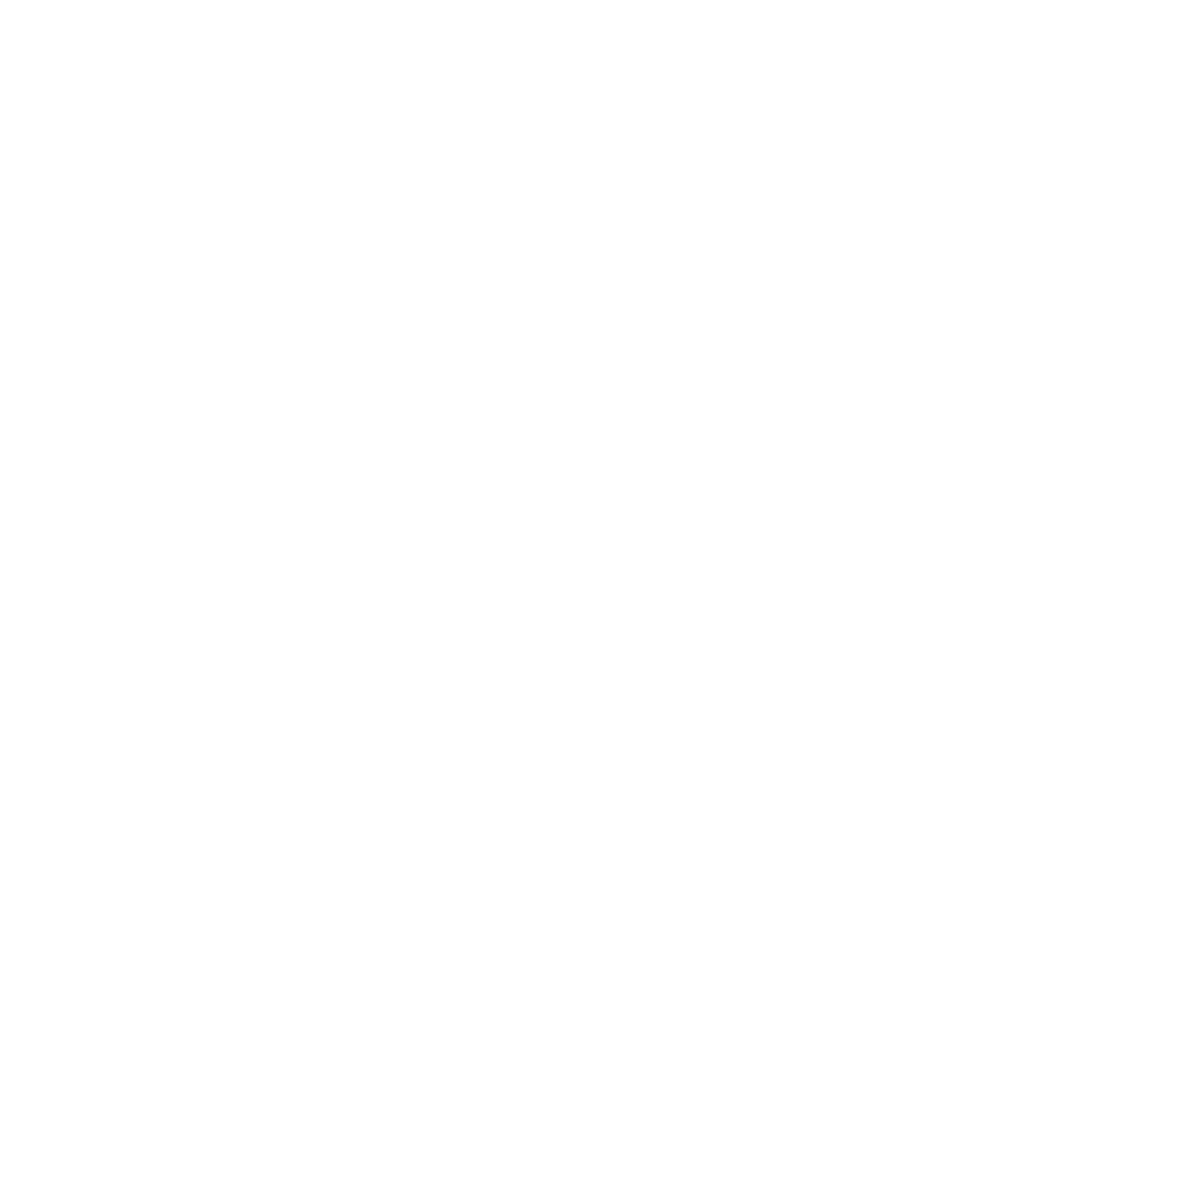 Track Runningcrew Sticker by Bridge Runners